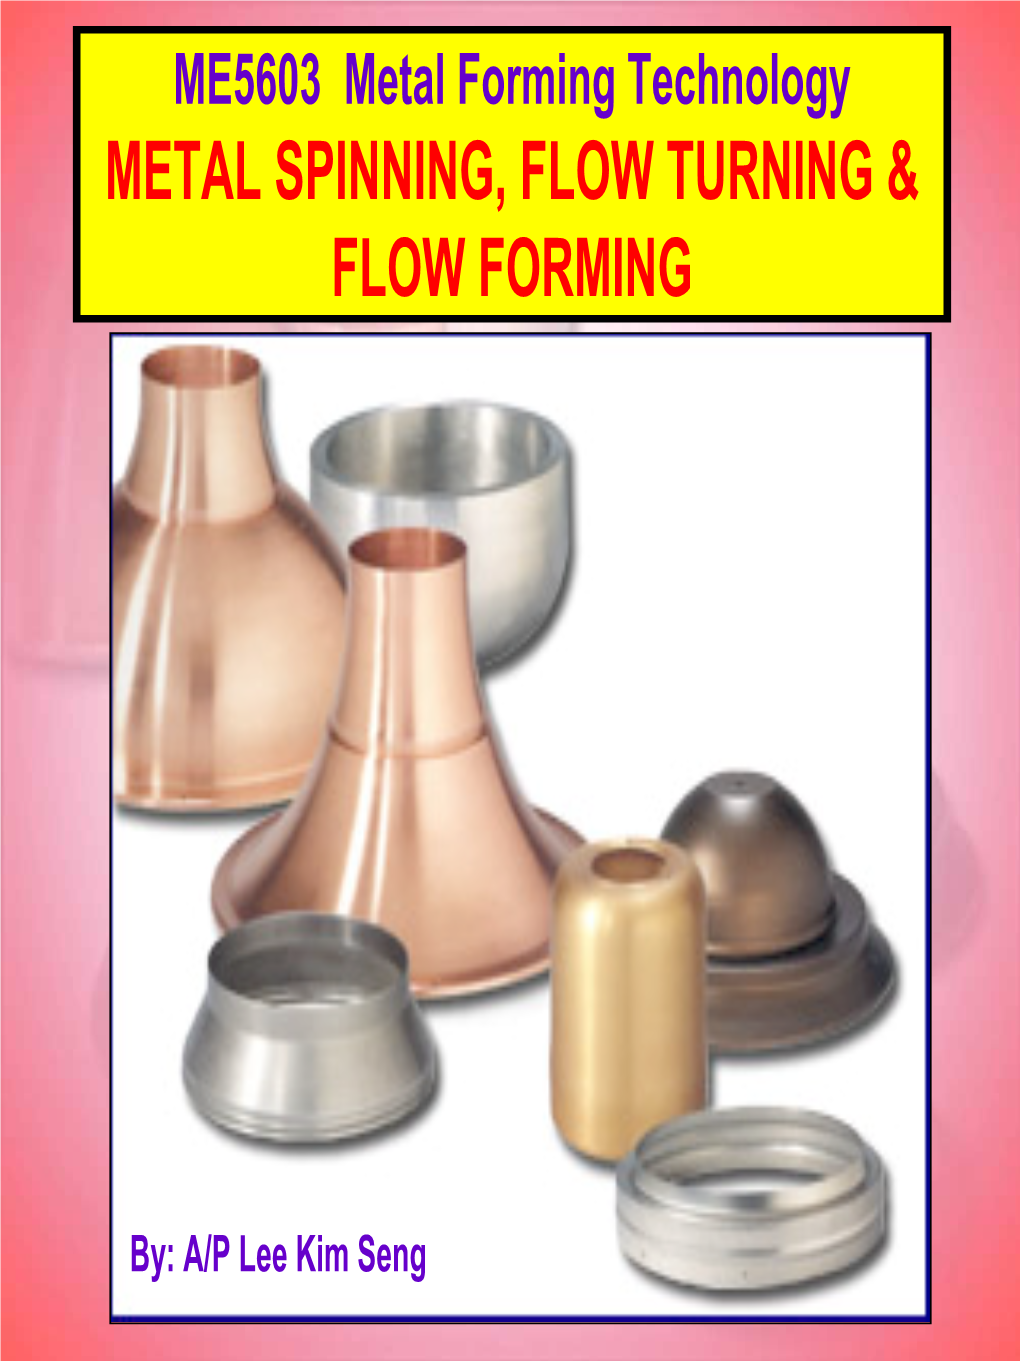 6. Metal Spinning, Flow Turning & Flow Forming